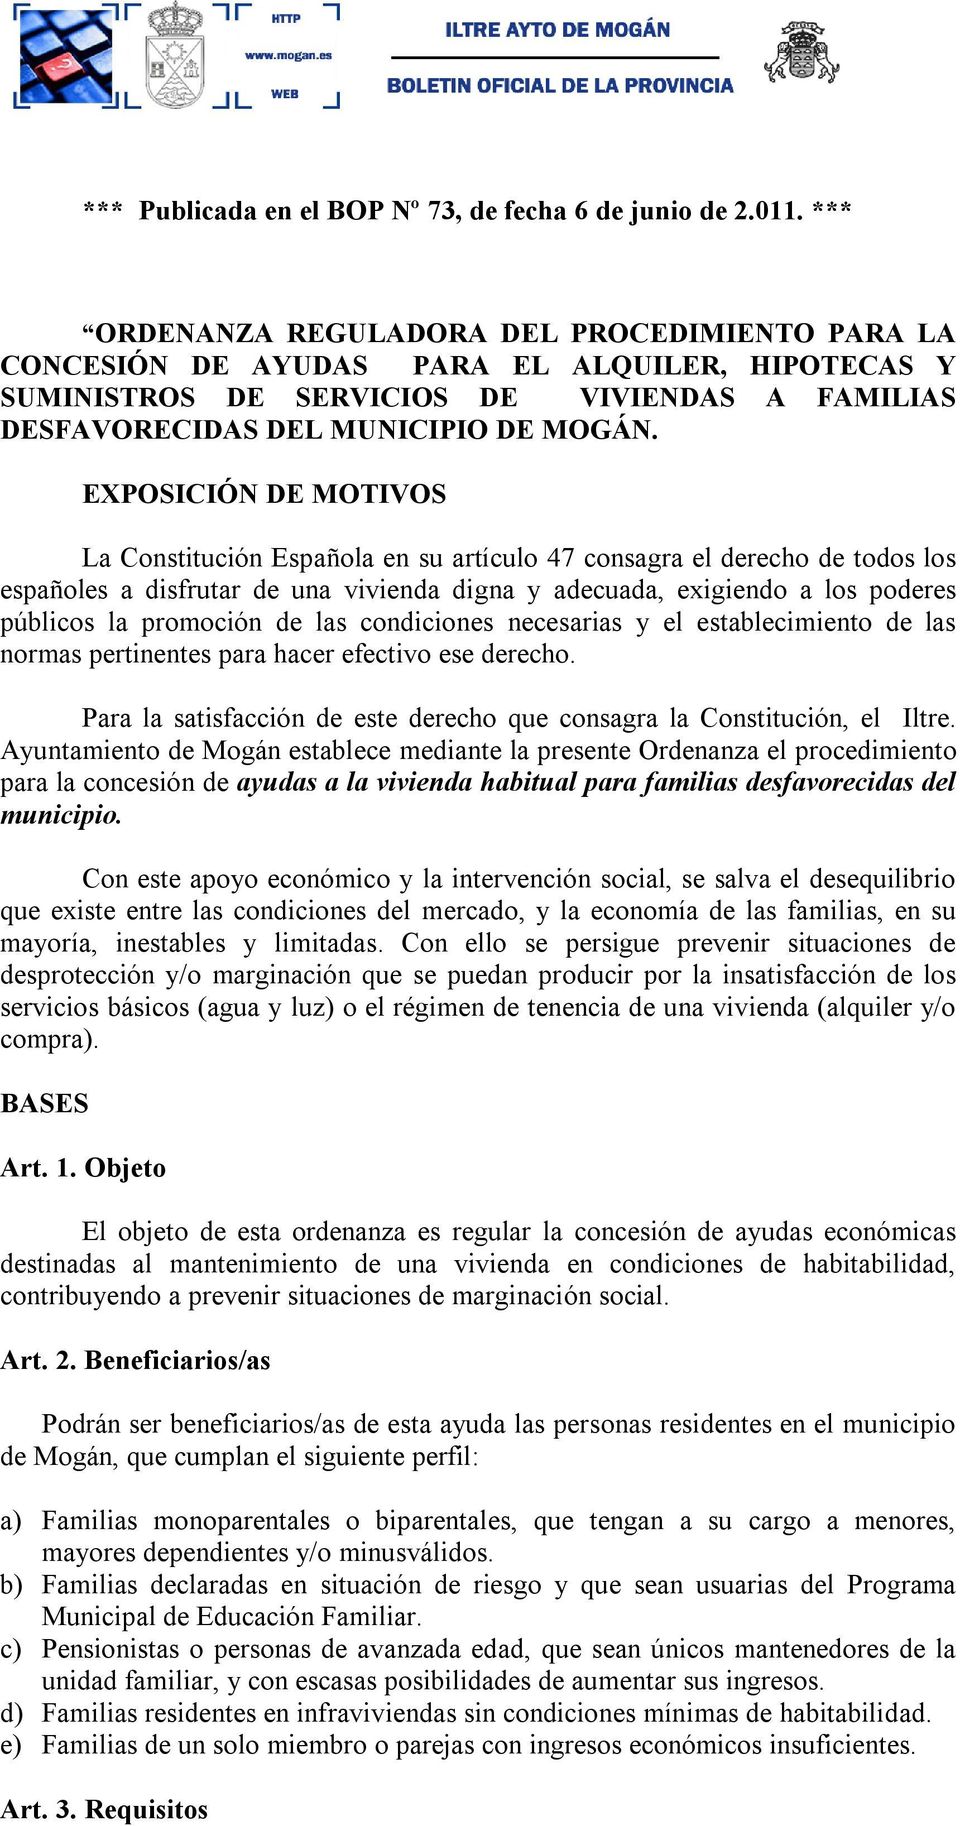 EXPOSICIÓN DE MOTIVOS La Constitución Española en su artículo 47 consagra el derecho de todos los españoles a disfrutar de una vivienda digna y adecuada, exigiendo a los poderes públicos la promoción